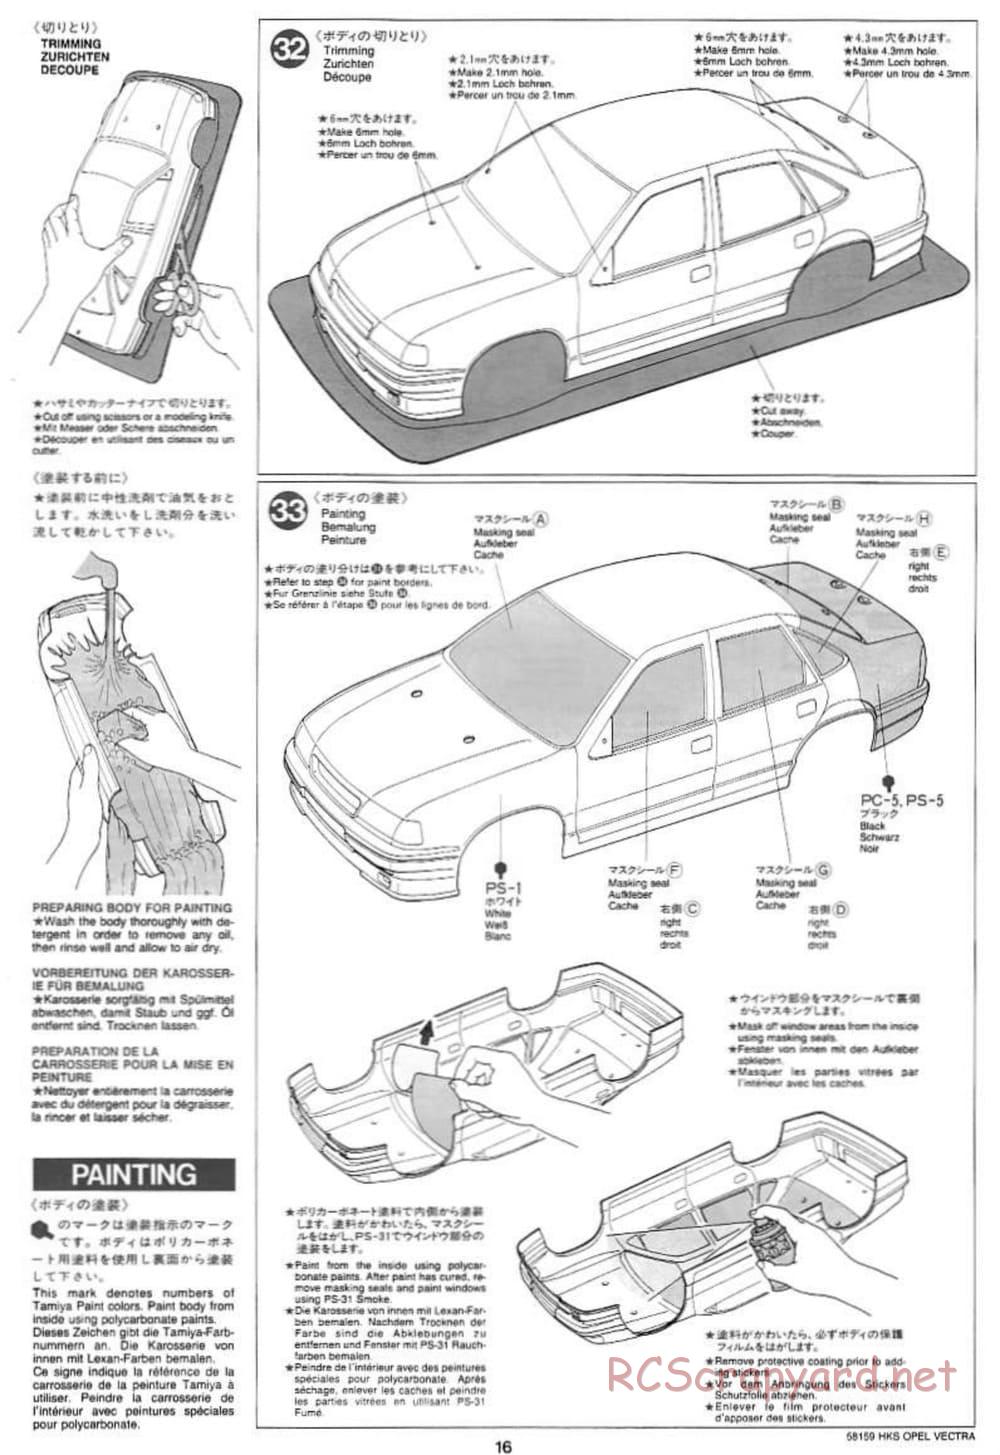 Tamiya - HKS Opel Vectra JTCC - FF-01 Chassis - Manual - Page 16